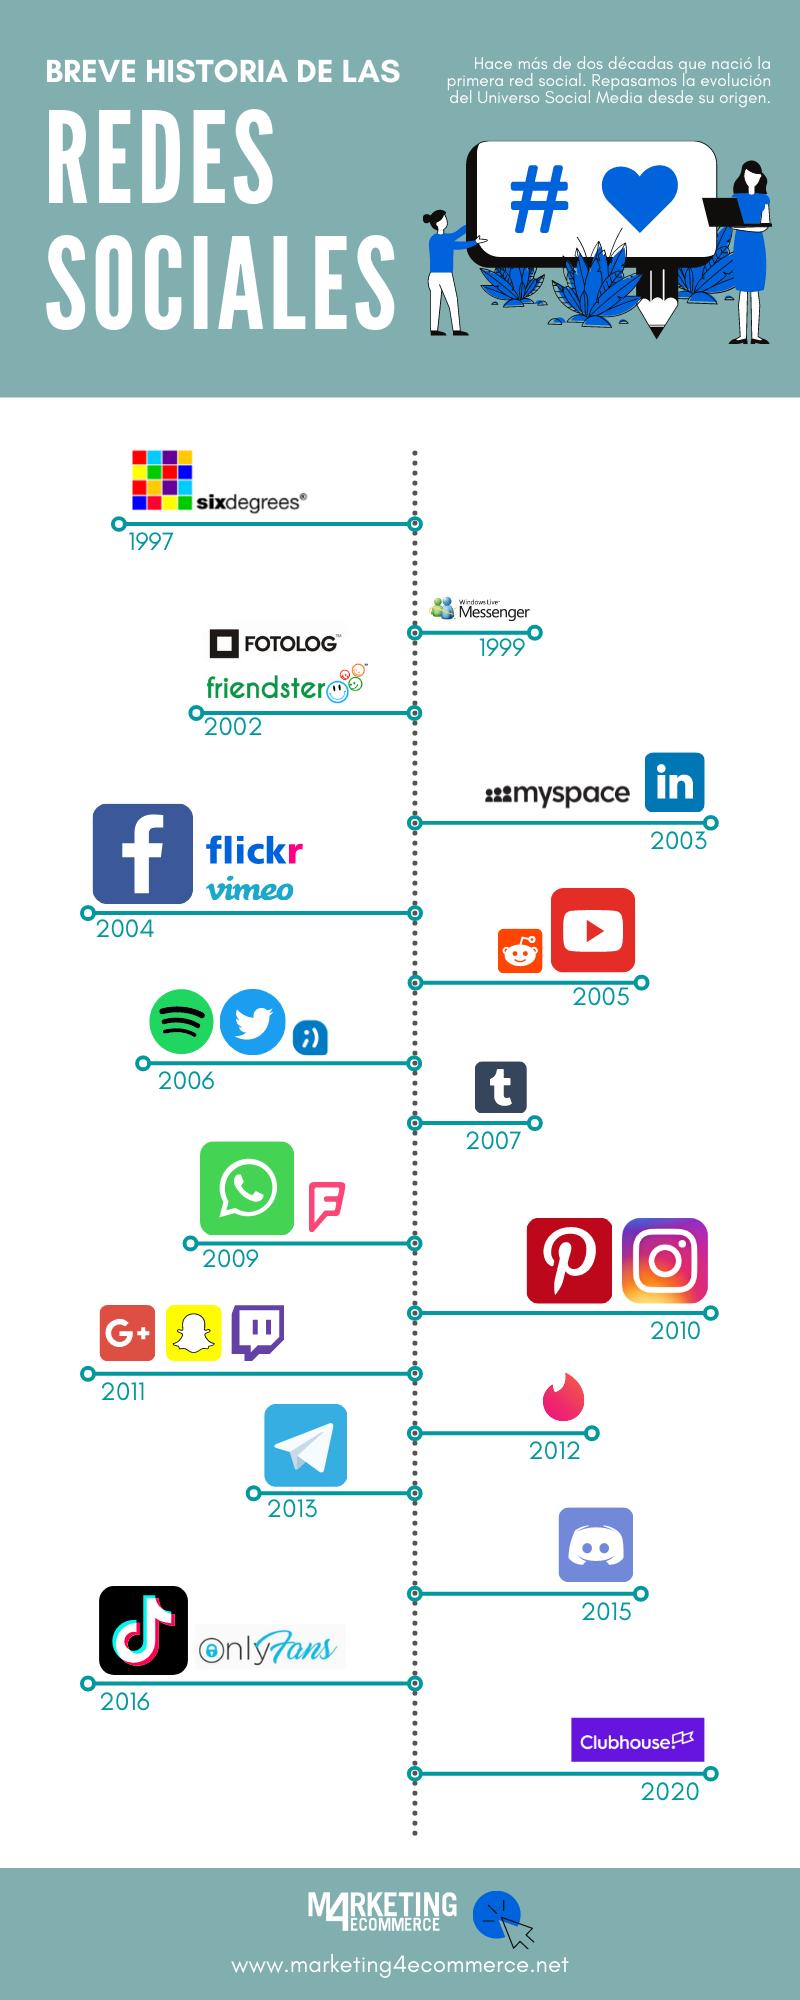 Historia de las redes sociales: cómo nacieron y cuál fue su evolución